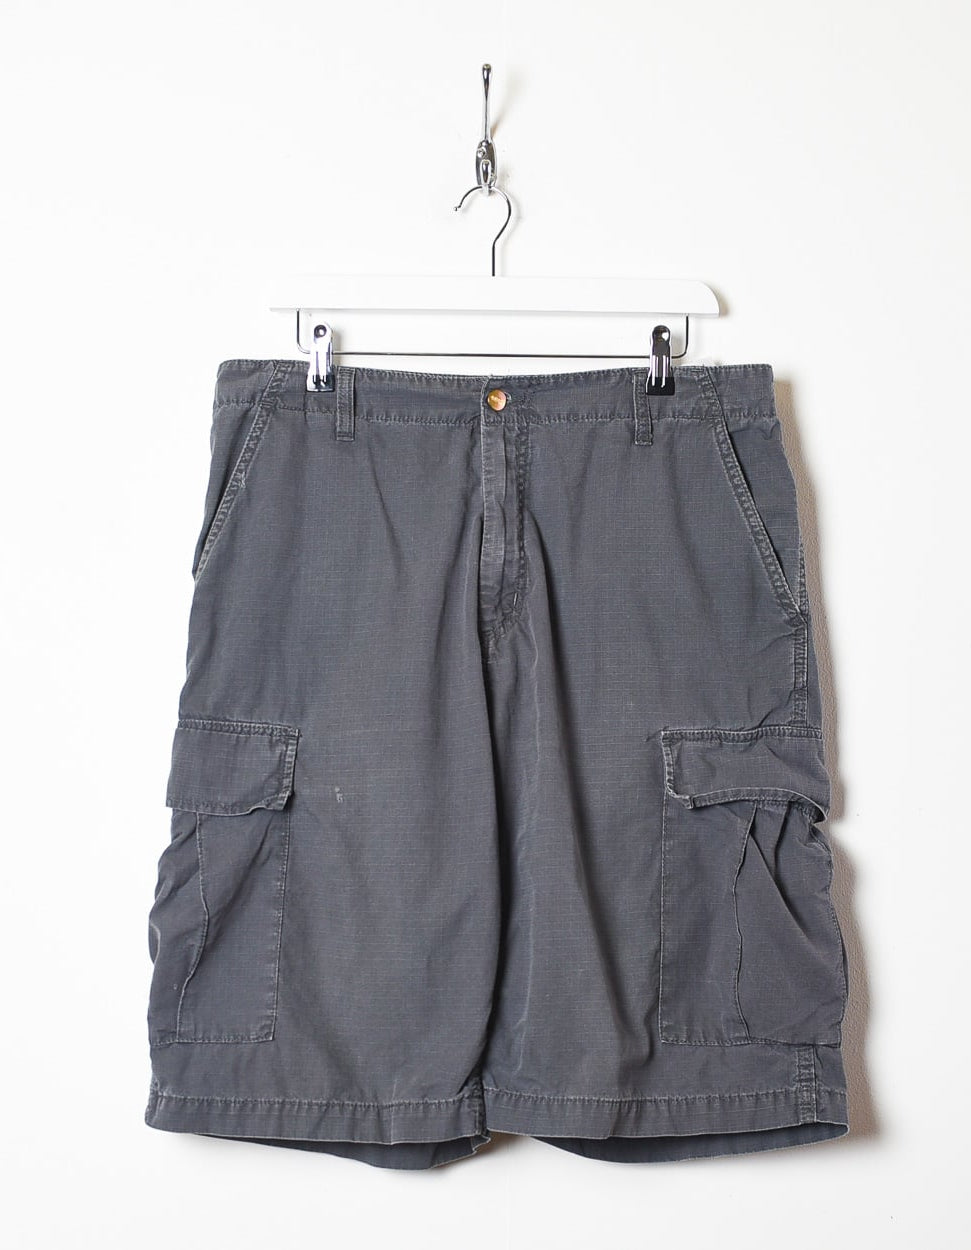 Grey Carhartt Cargo Shorts - W36